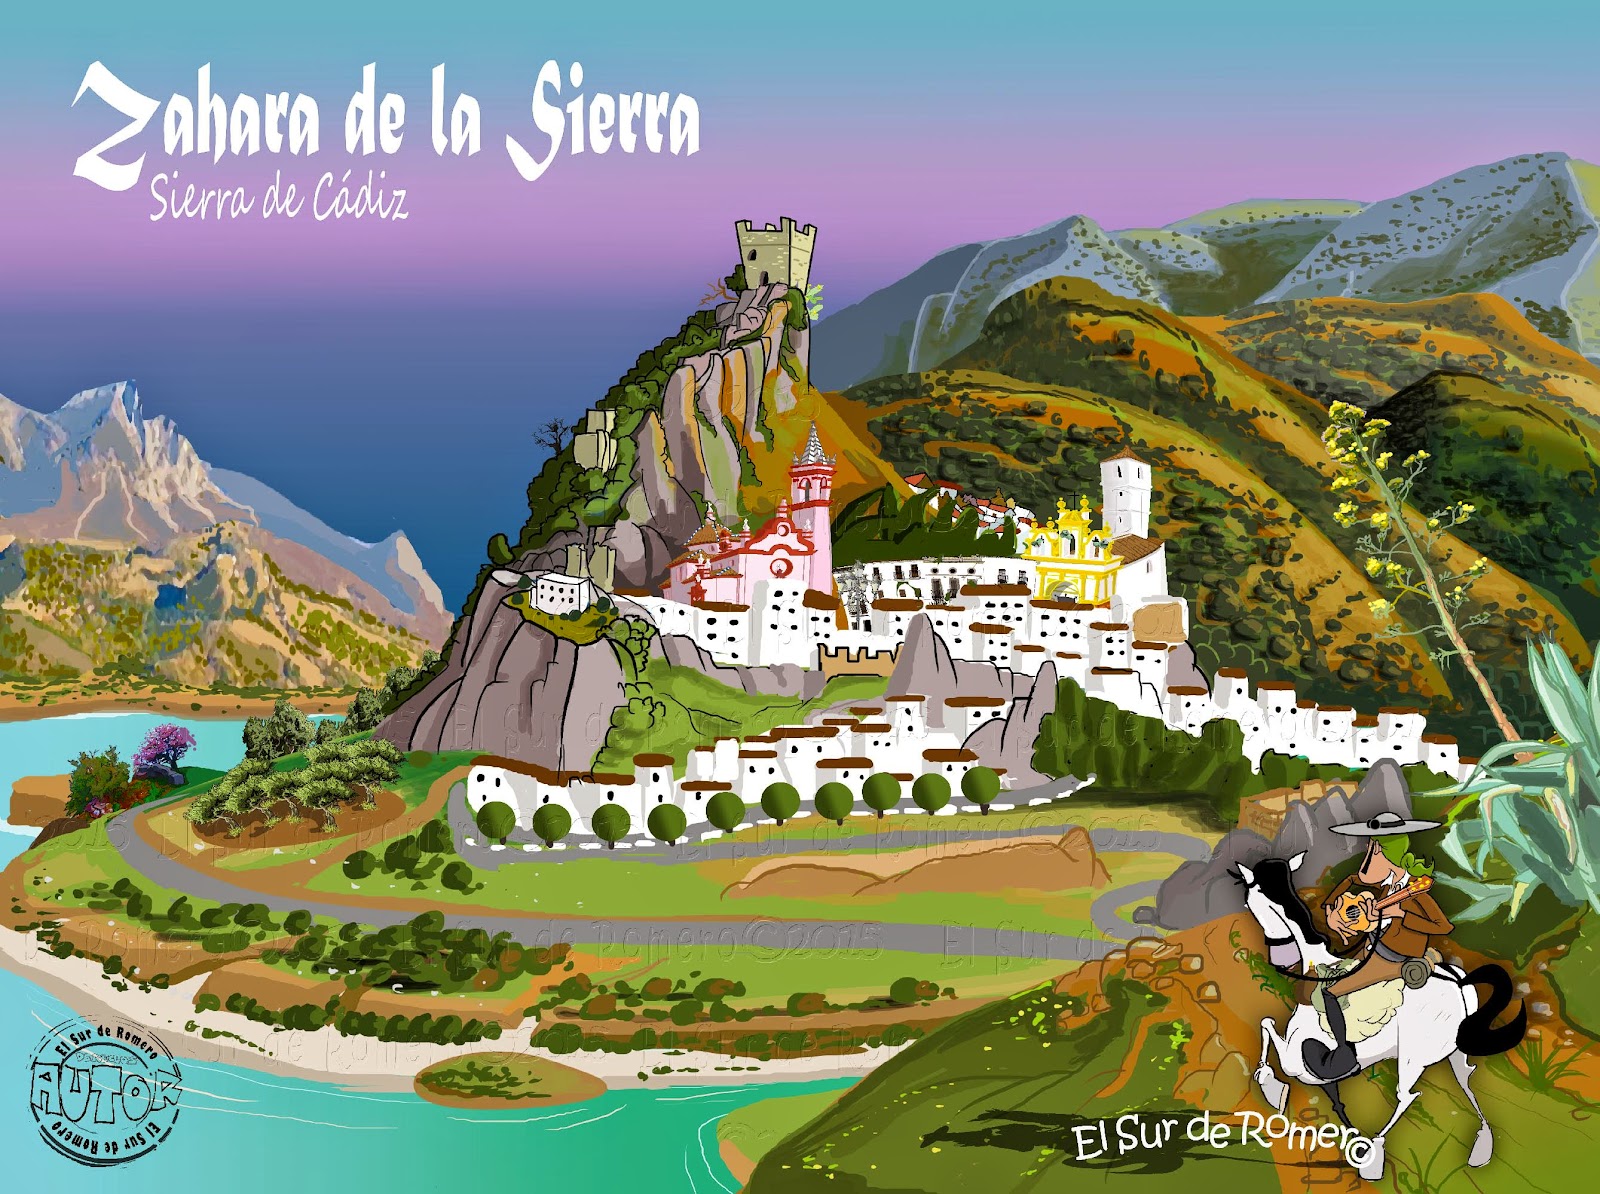 <img src="Zahara de la Sierra.jpg" alt="dibujos de Zahara de la Sierra"/>